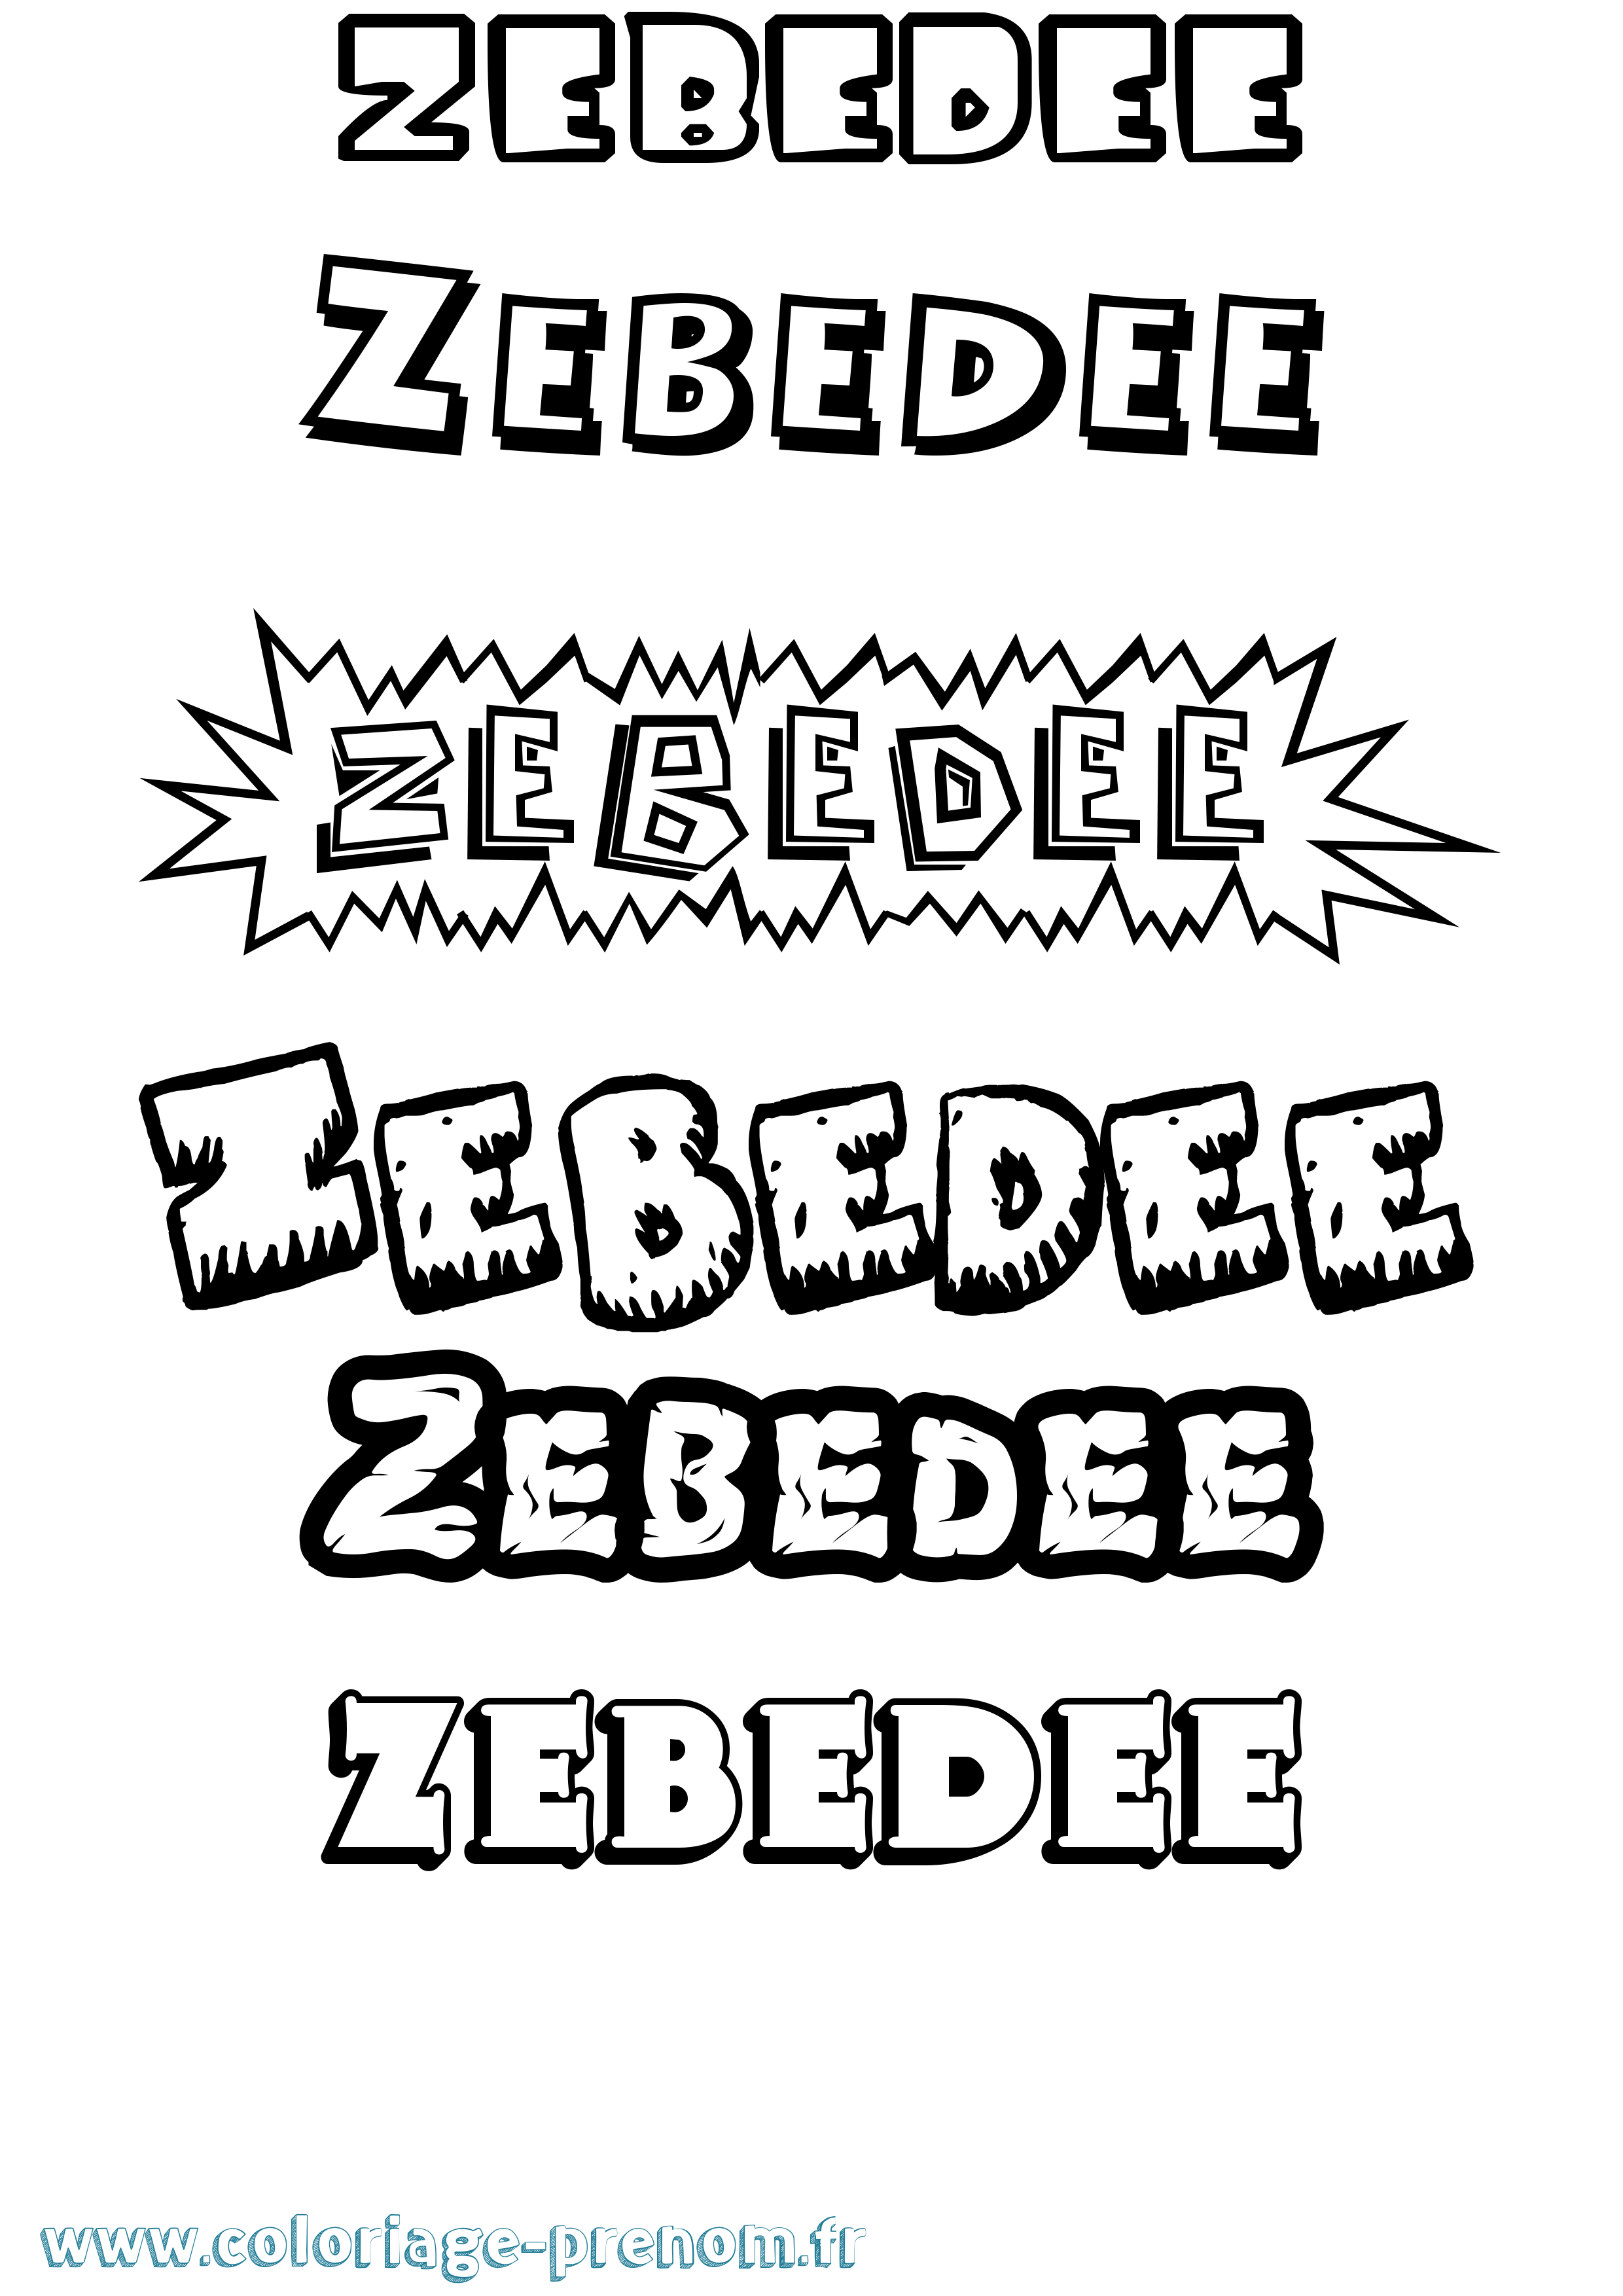 Coloriage prénom Zebedee Dessin Animé